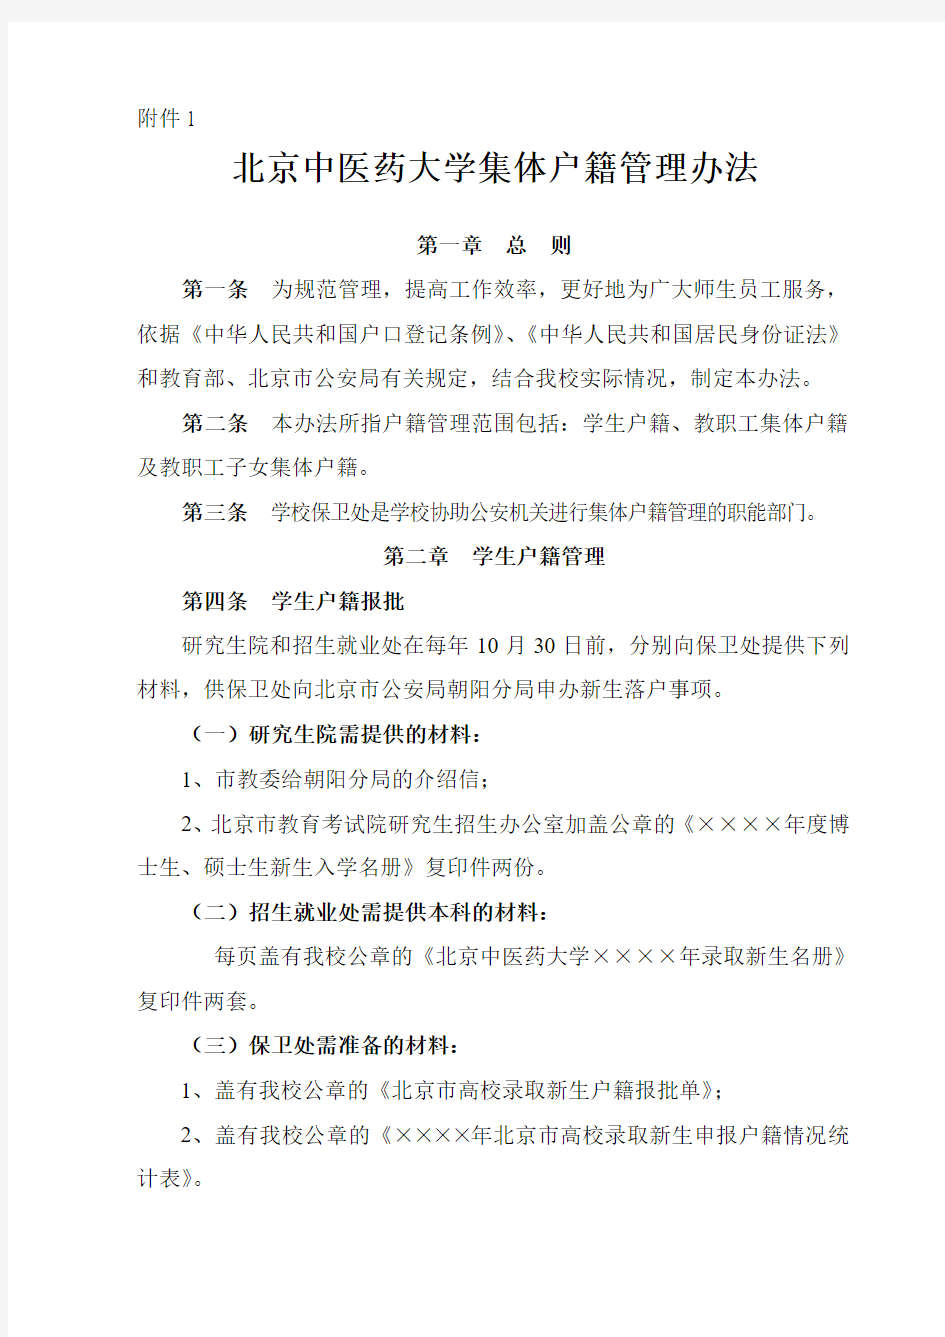 北京中医药大学集体户籍管理办法2013年4月